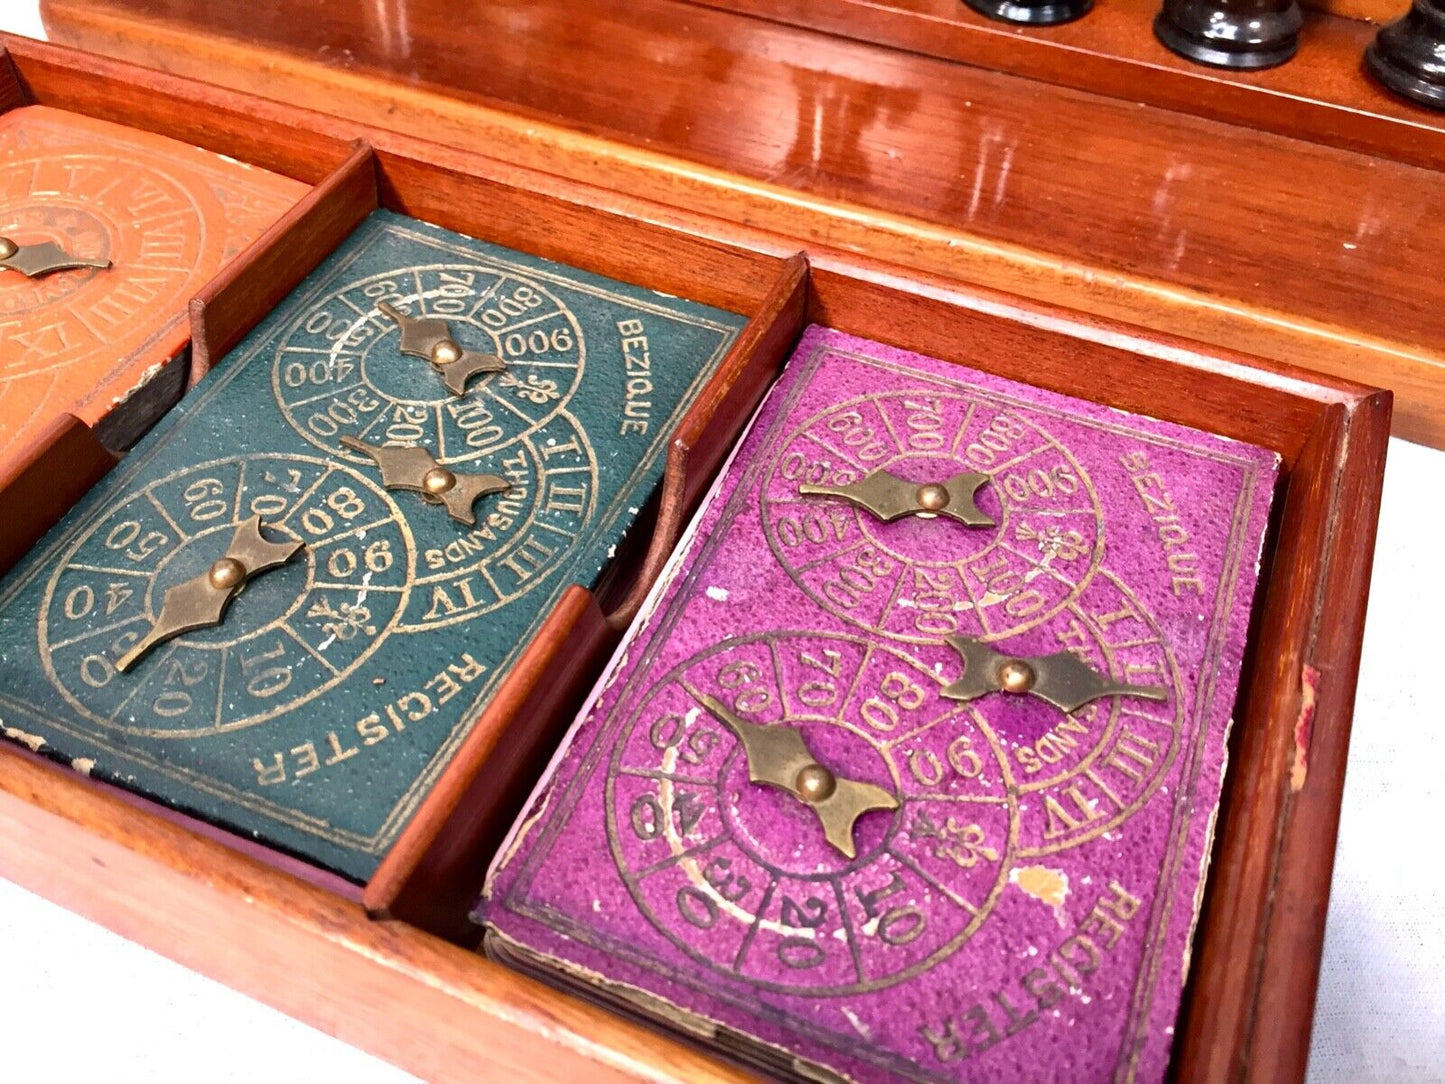 Antique 19th Century Victorian Games Compendium Box / Wooden Cabinet c.1880